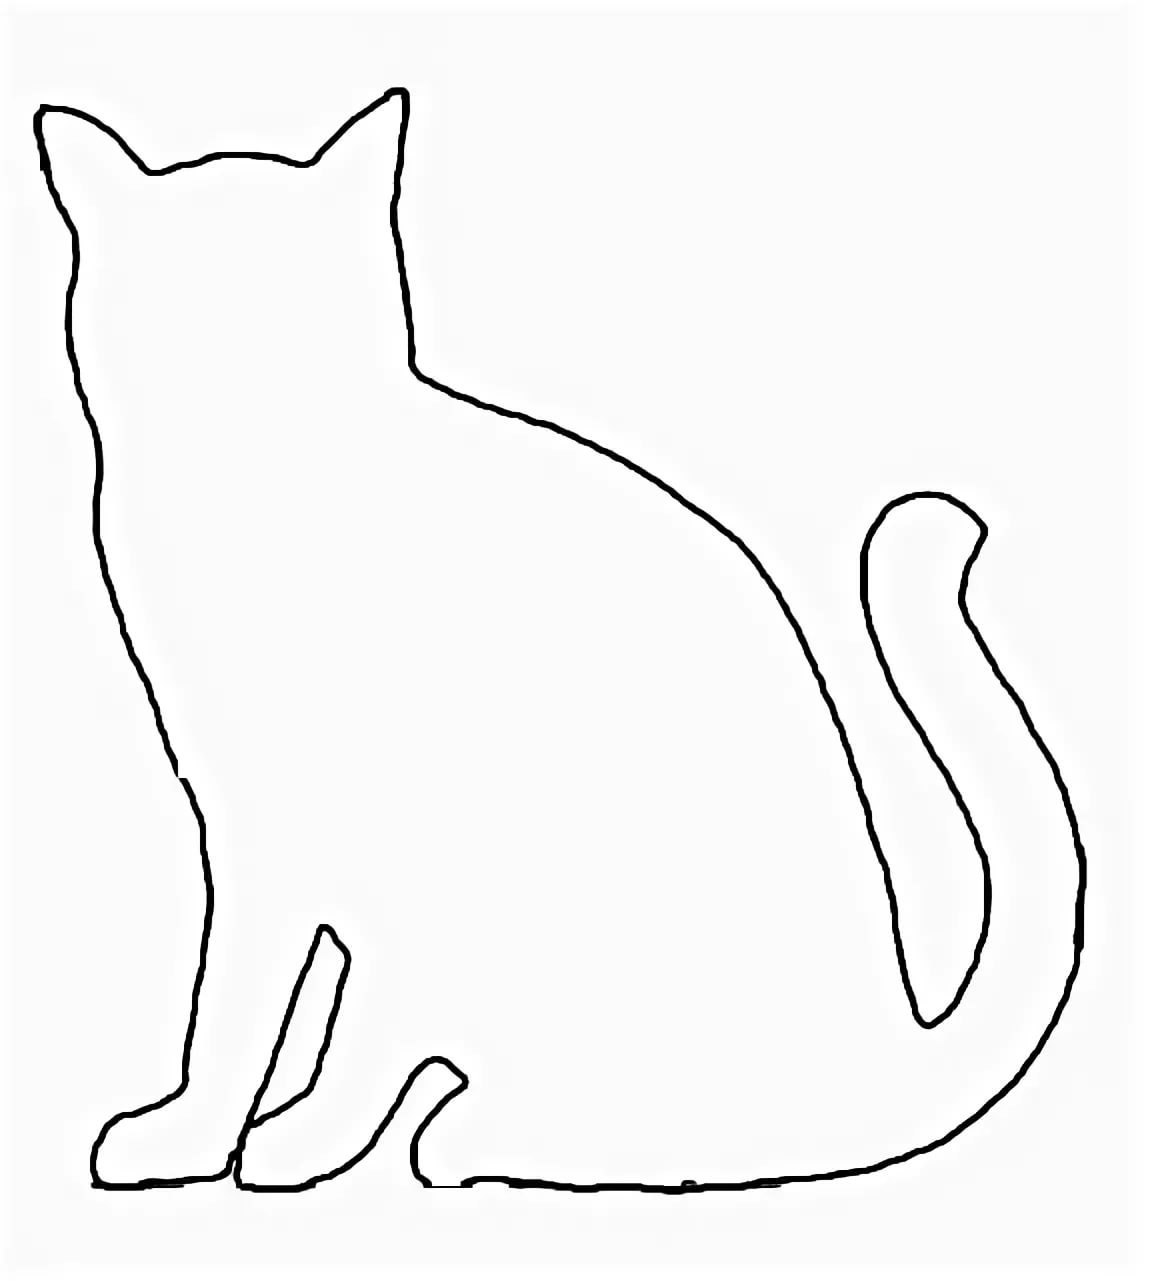 Трафарет кота для рисования